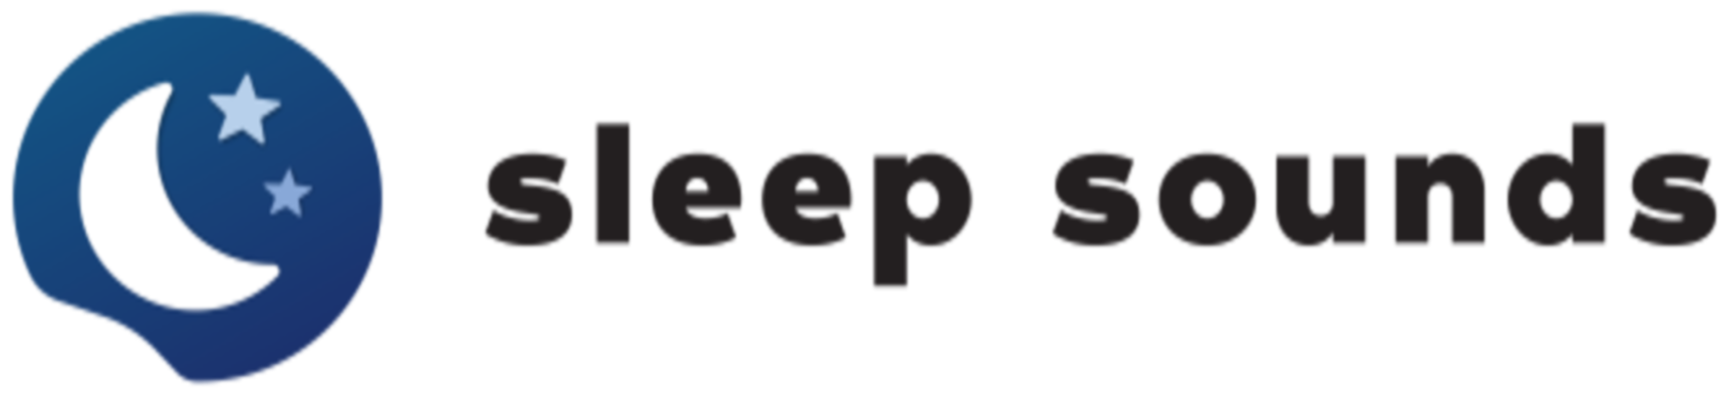 Sleep Sounds logo